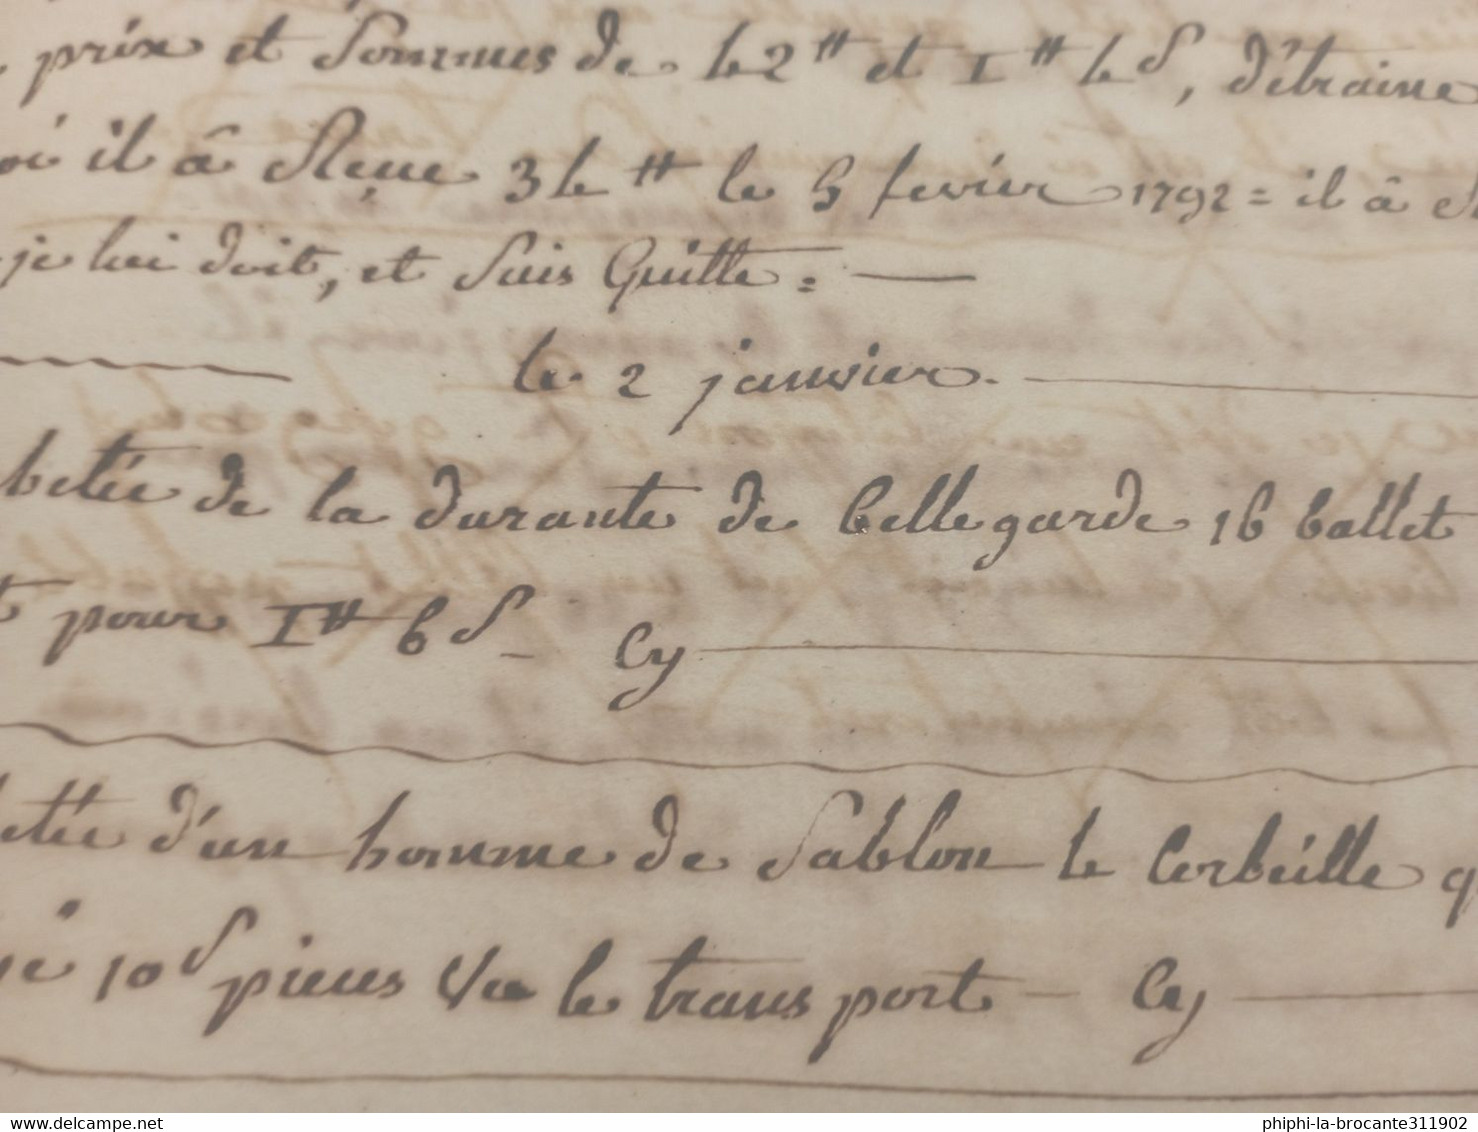 Cahier de compte d'une personne habitant entre Beaurepaire et Vienne dans l'Isère ouvert en 1792 et fermé en 1802